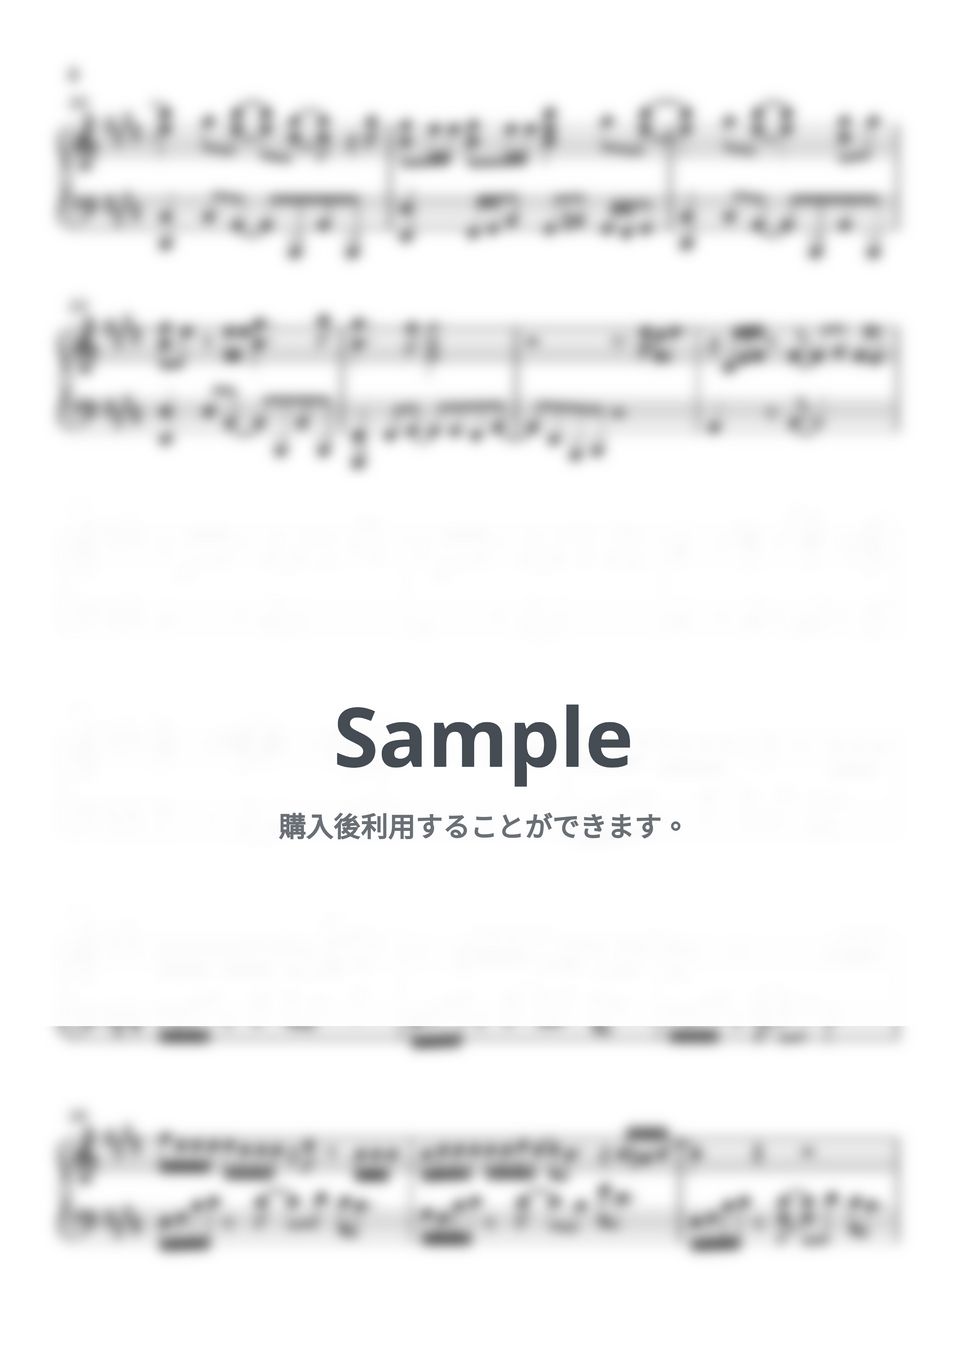 ヨルシカ - 月光浴 (大雪海のカイナ / ピアノ楽譜) by Piano Lovers. jp